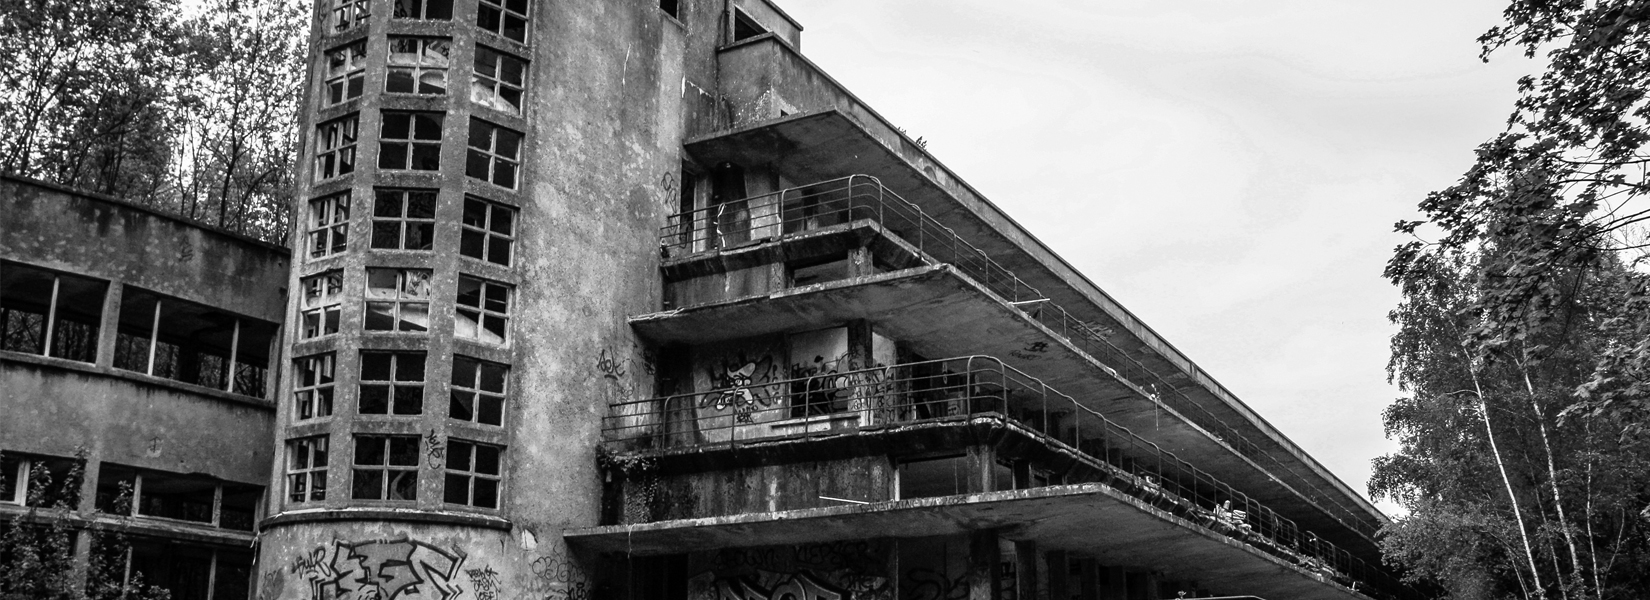 Le vieux sanatorium français abandonné